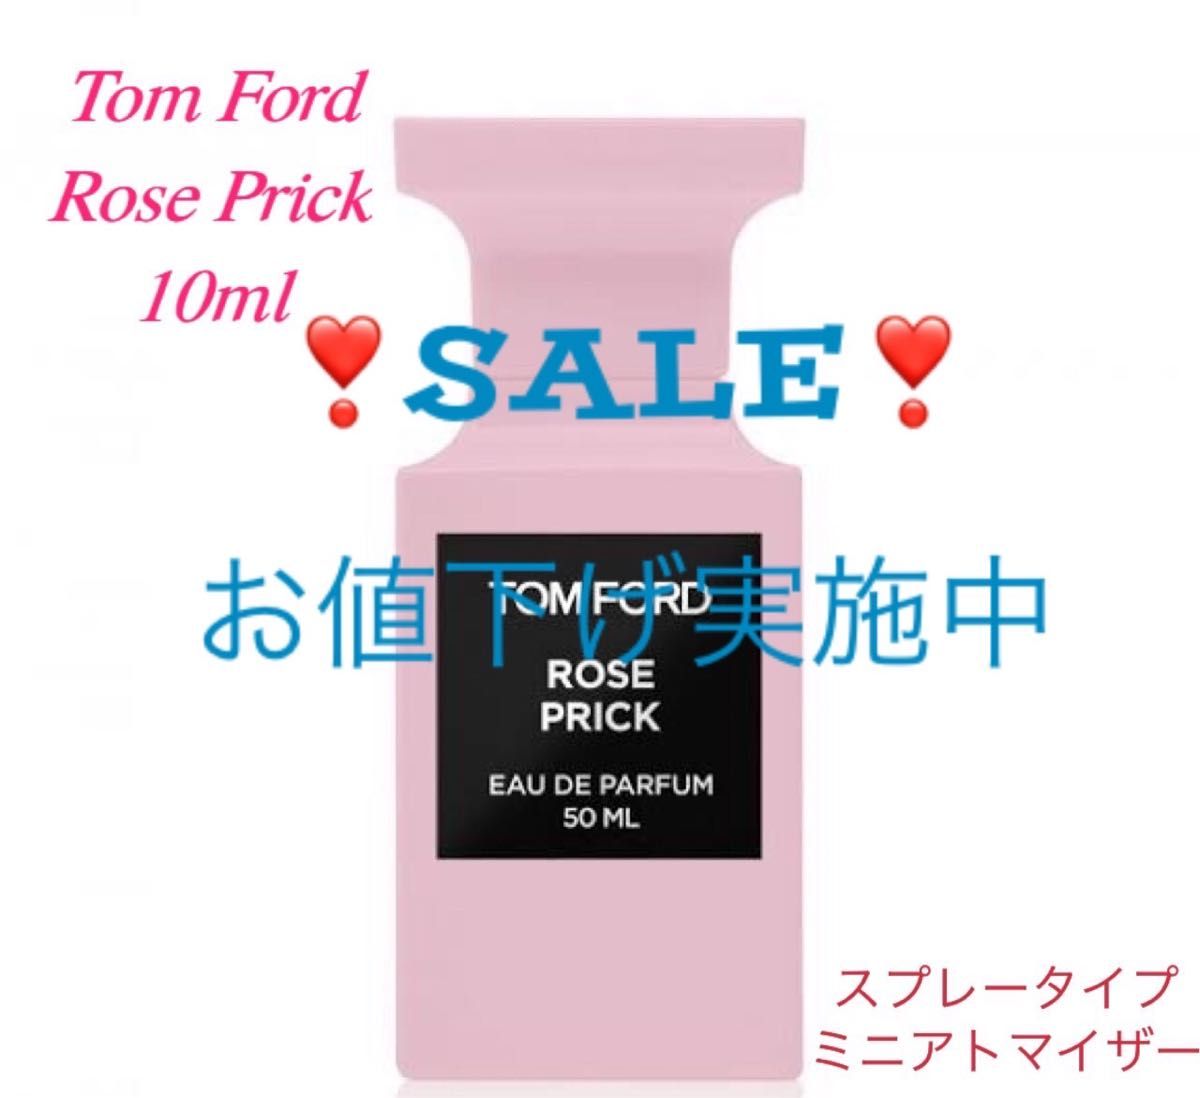 【新作特価】 TOM FORD / ROSE PRICK / ローズ プリック 50ml